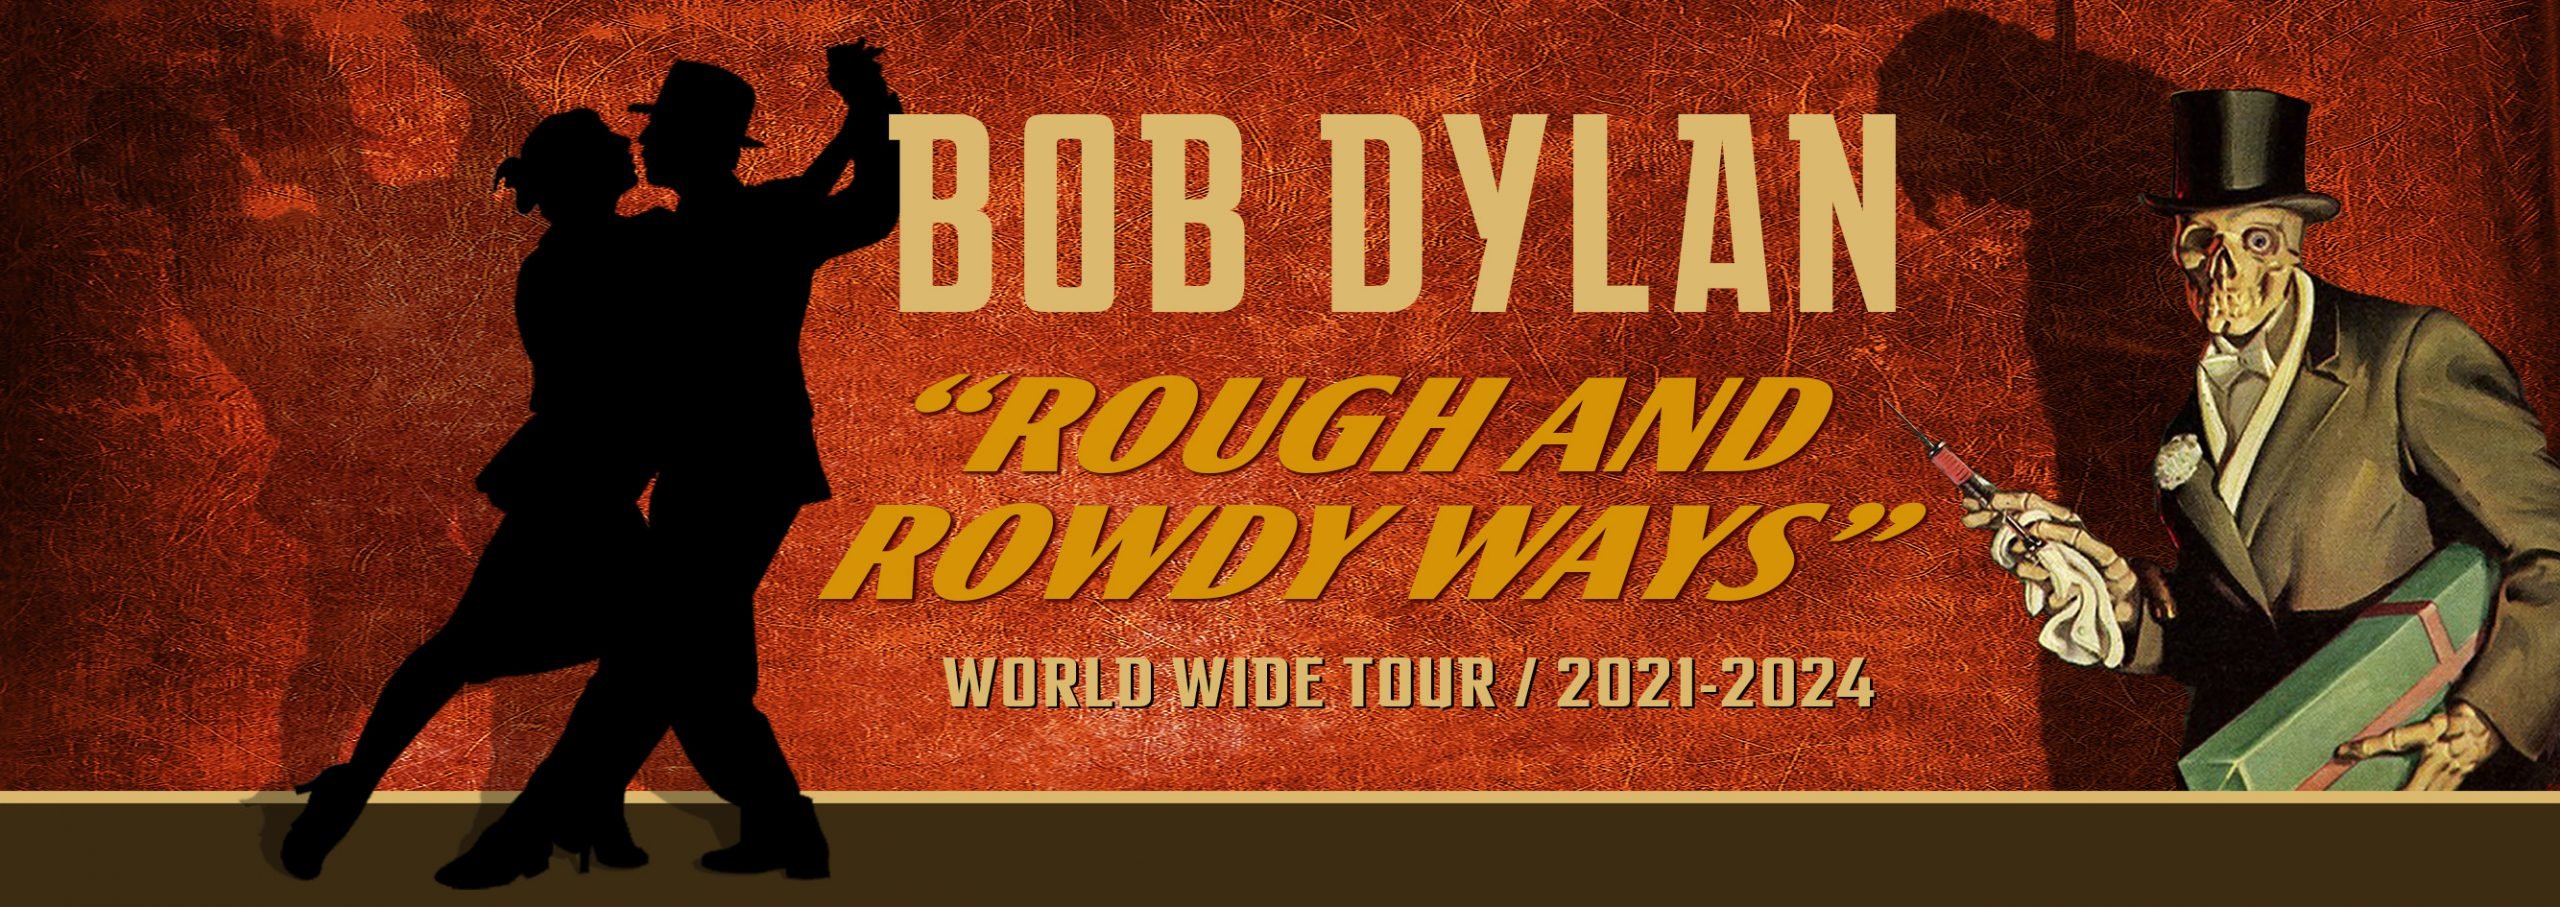 Bob Dylan 2024 Tour Merchandise Alane Auguste